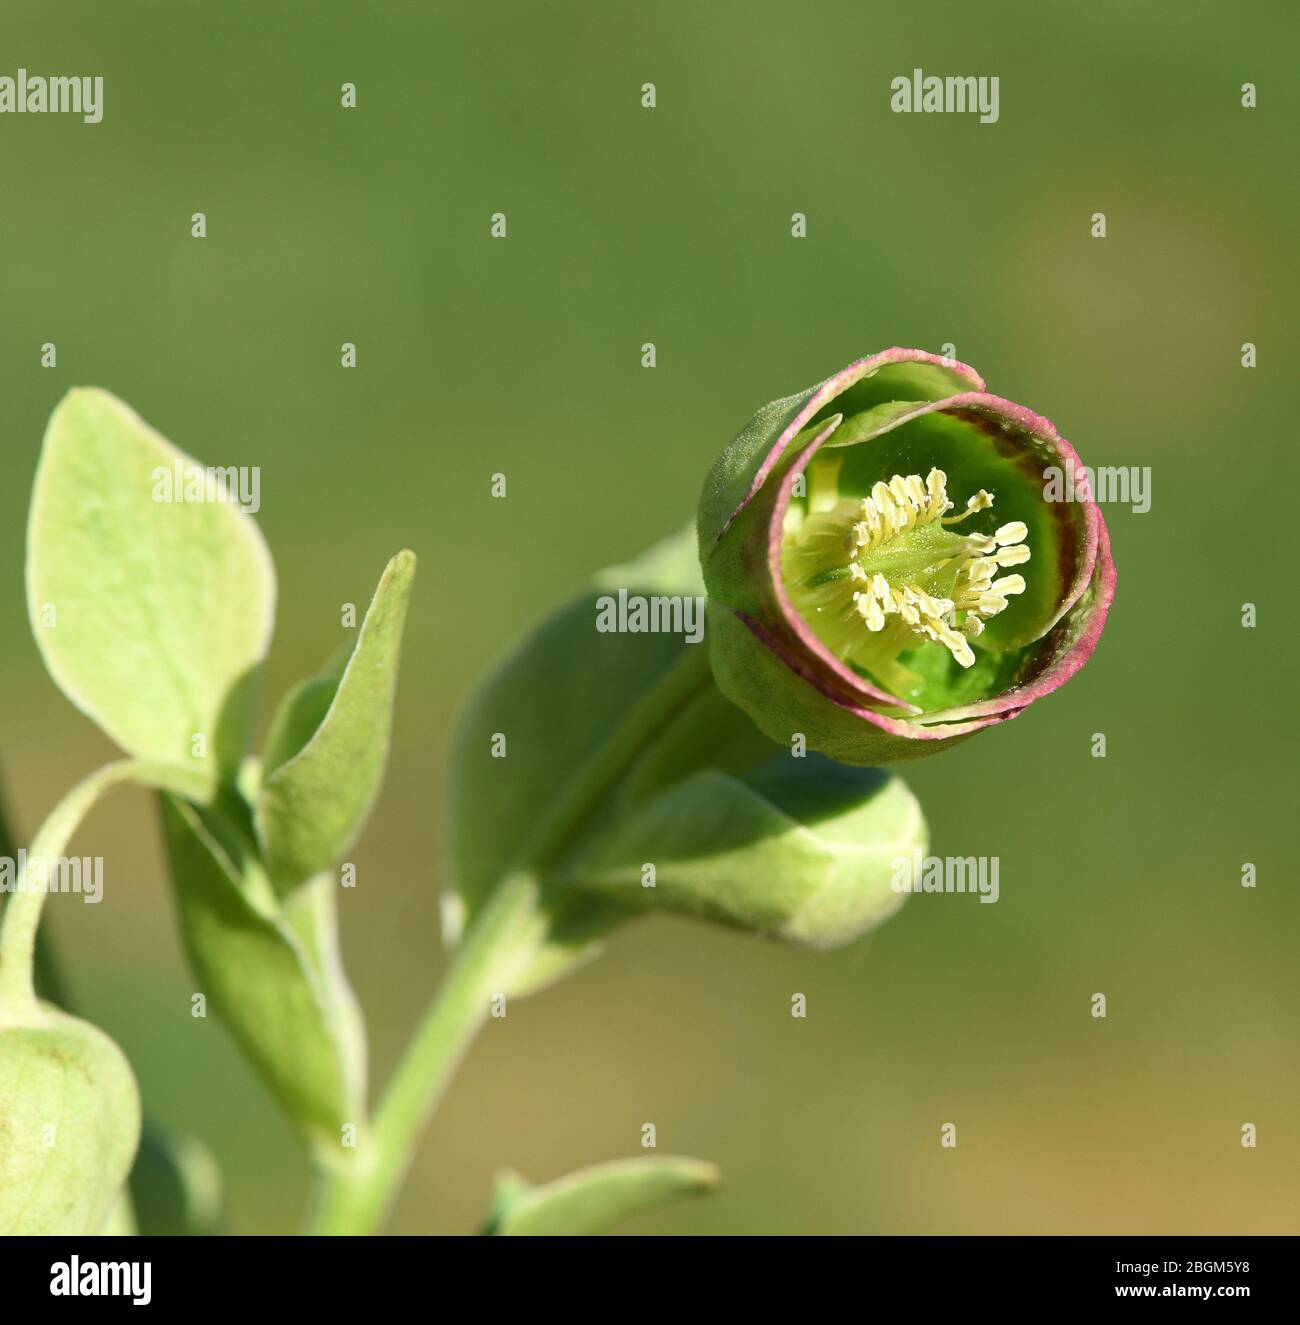 Stinkende Nieswurz, Helleborus foetidus ist eine wichtige Heilpflanze und eine Duftpflanze mit gruen, gelben Blueten und bluet im Winter. Stinkend, verdammt Stockfoto